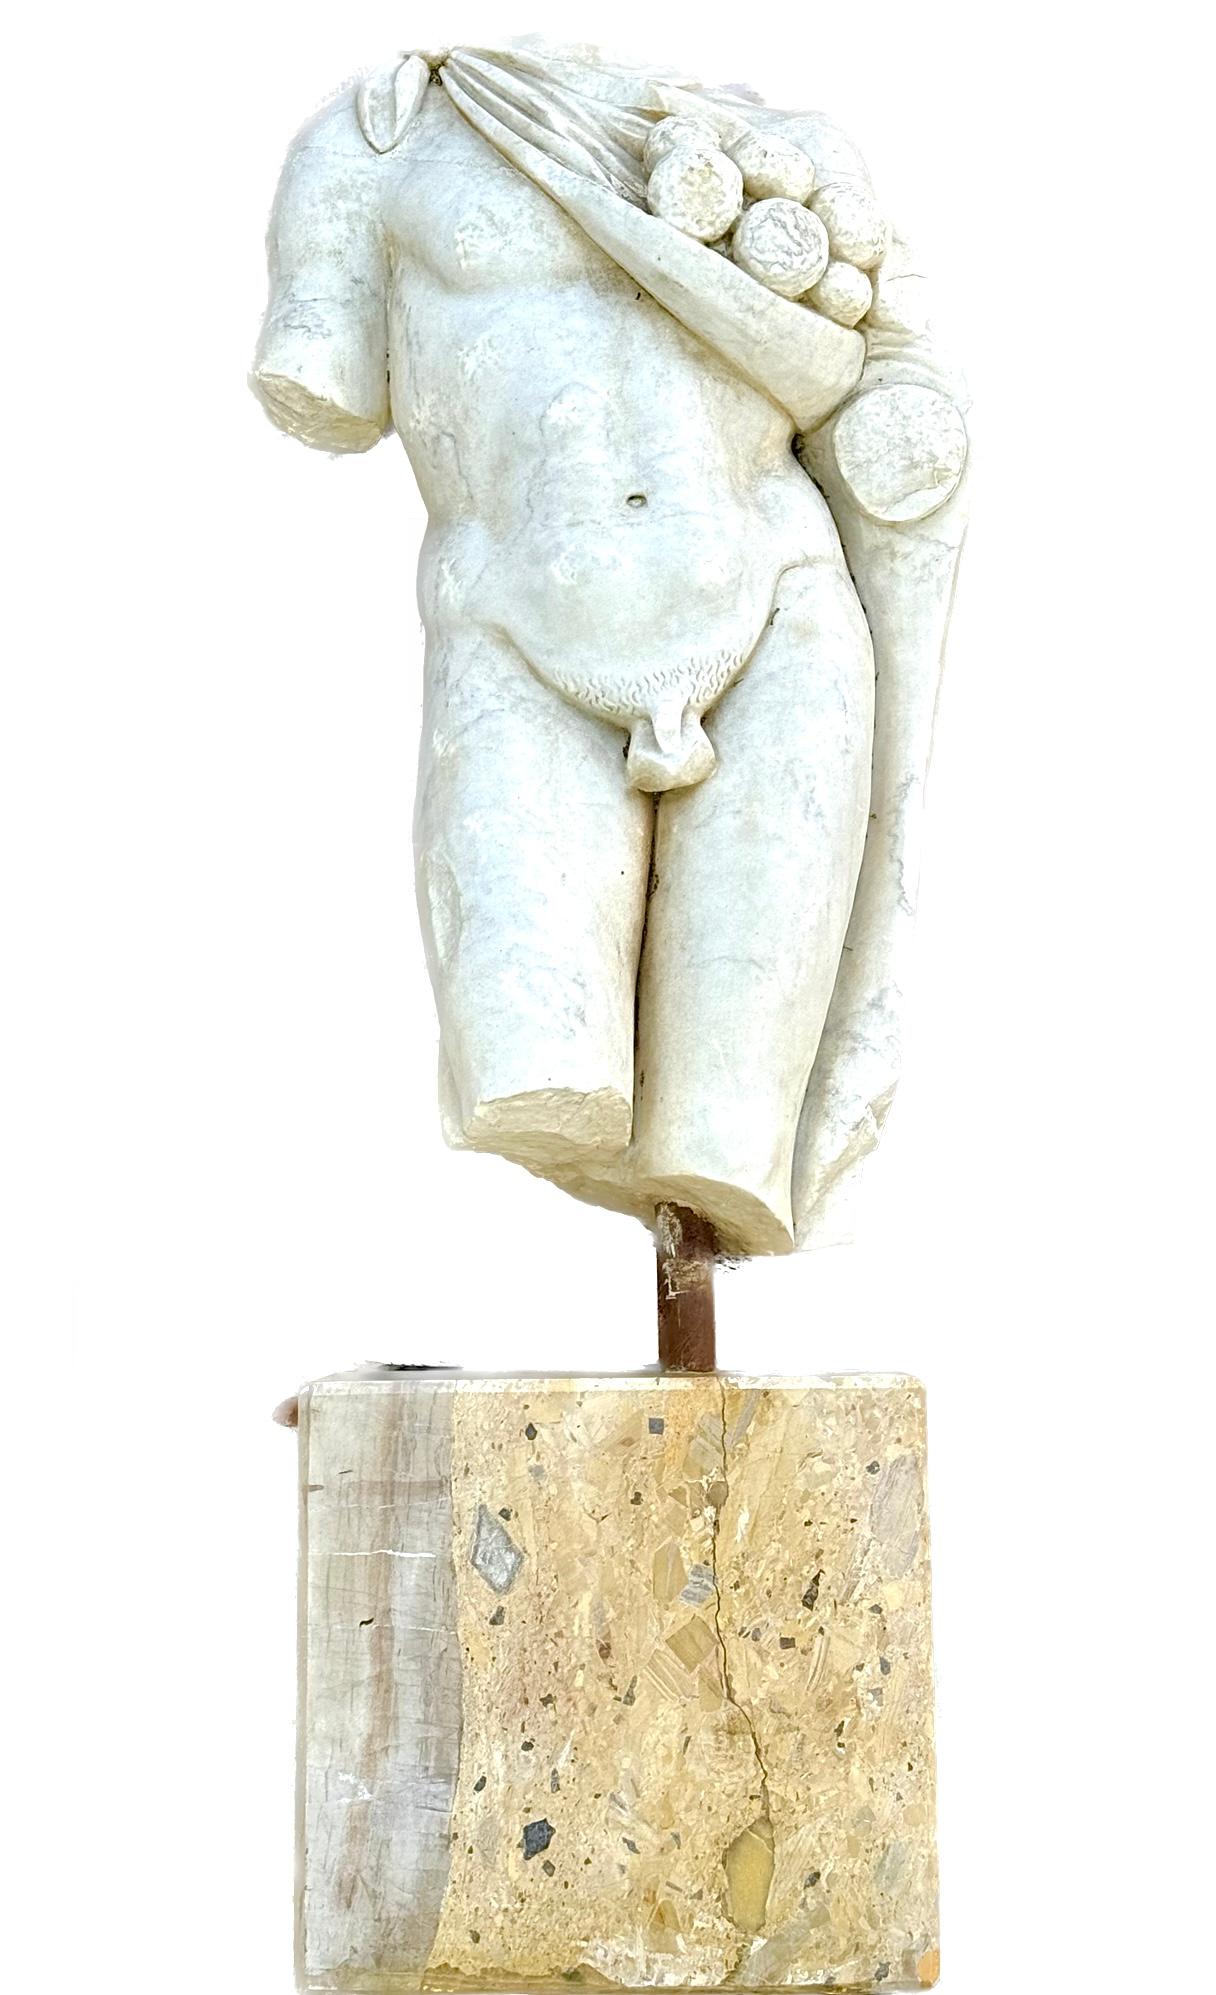 Antike römische Marmorskulptur eines drapierten römischen männlichen Torsos, montiert.  Die Skulptur ist rund geschnitzt und steht auf einem späteren Marmorsockel. Die Abmessungen der römischen Figur allein sind 37 